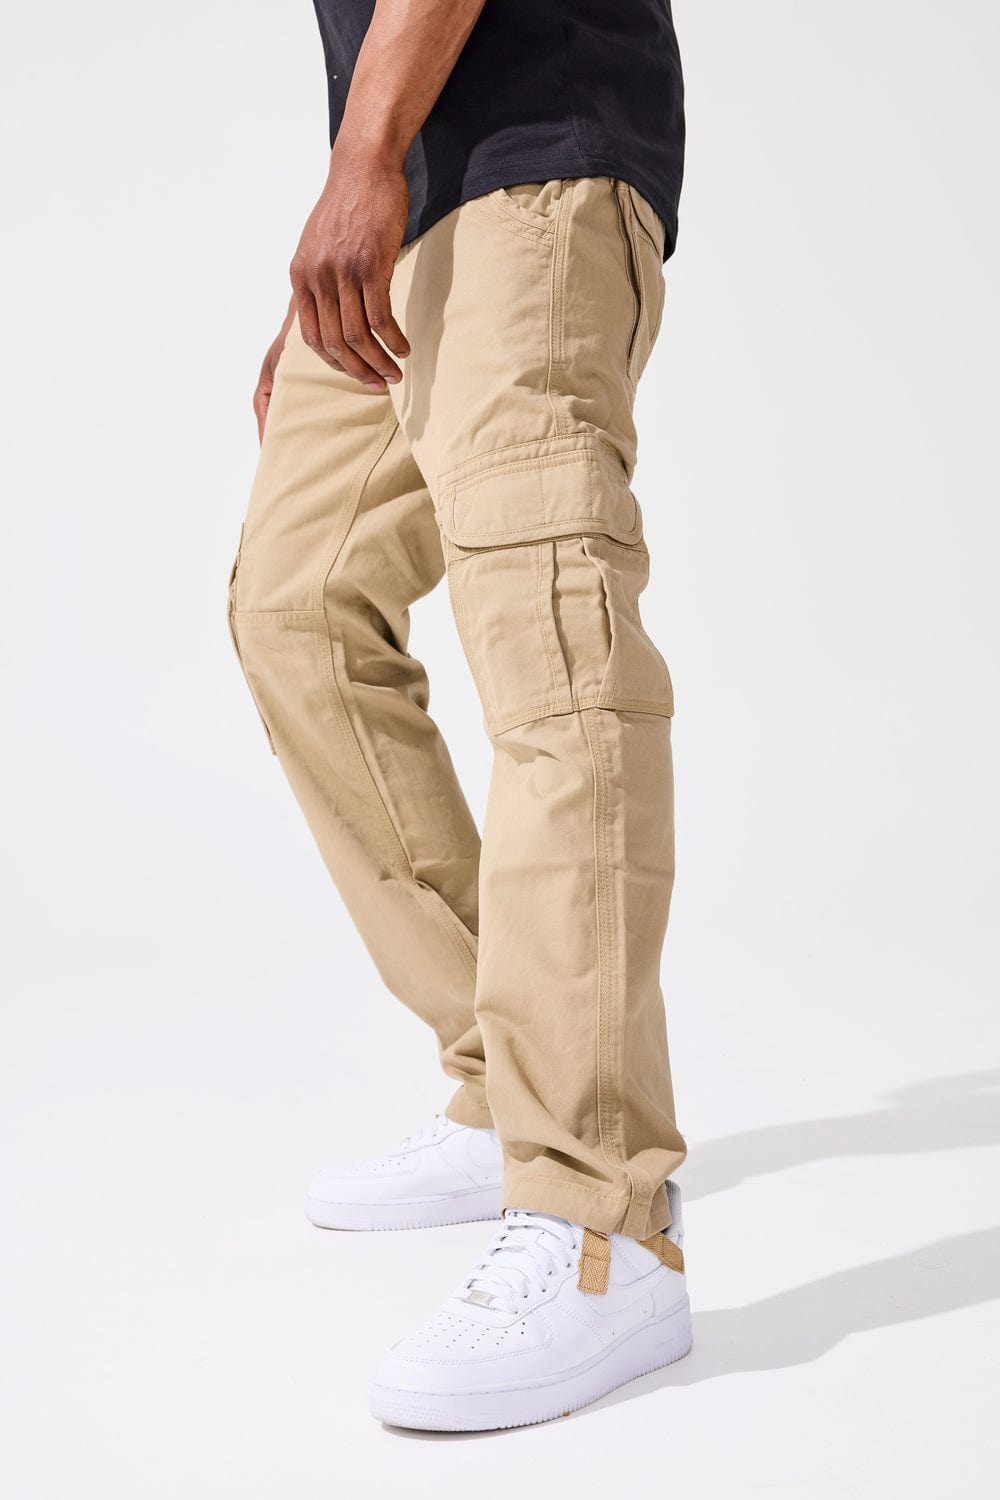  Khaki Cargo Pants